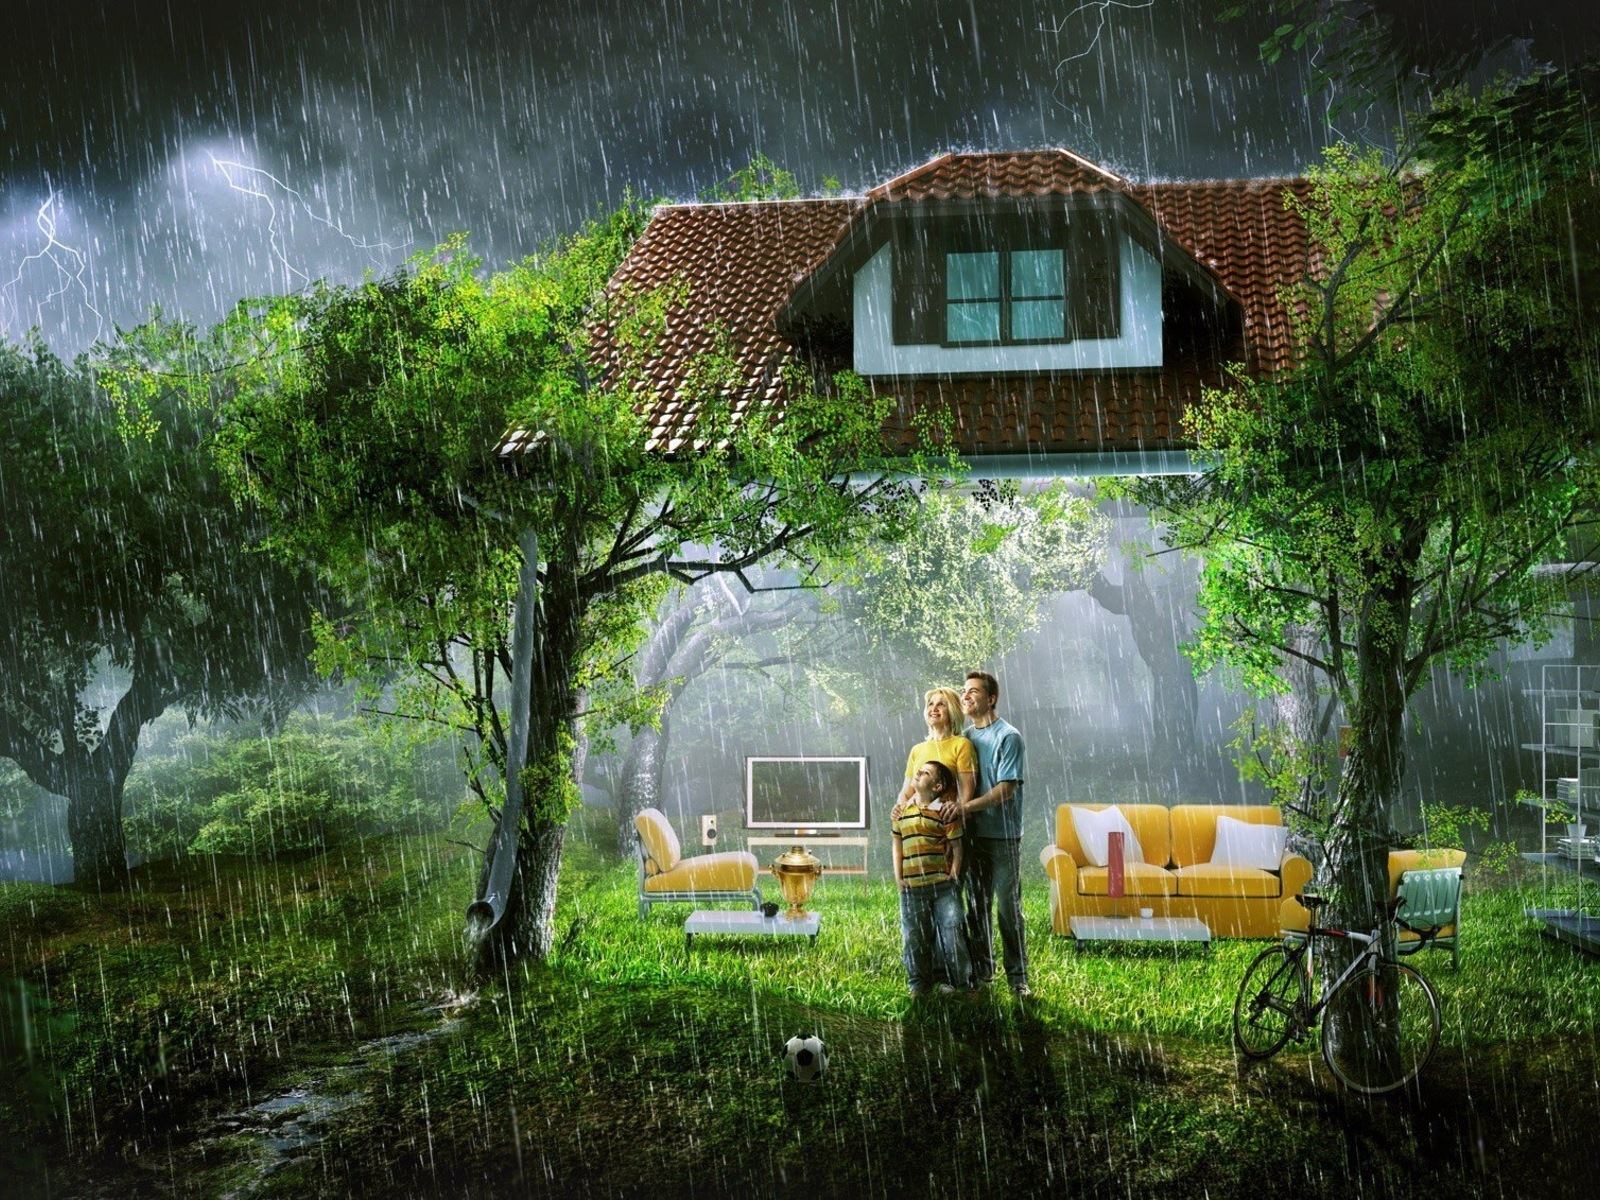 3d обои стены дома вдруг исчезли, счастливая семья стоит под тёплым летним дождём, вдыхая полной грудью пряный запах леса и наслаждаясь мгновениями счастья...  дома # 35114